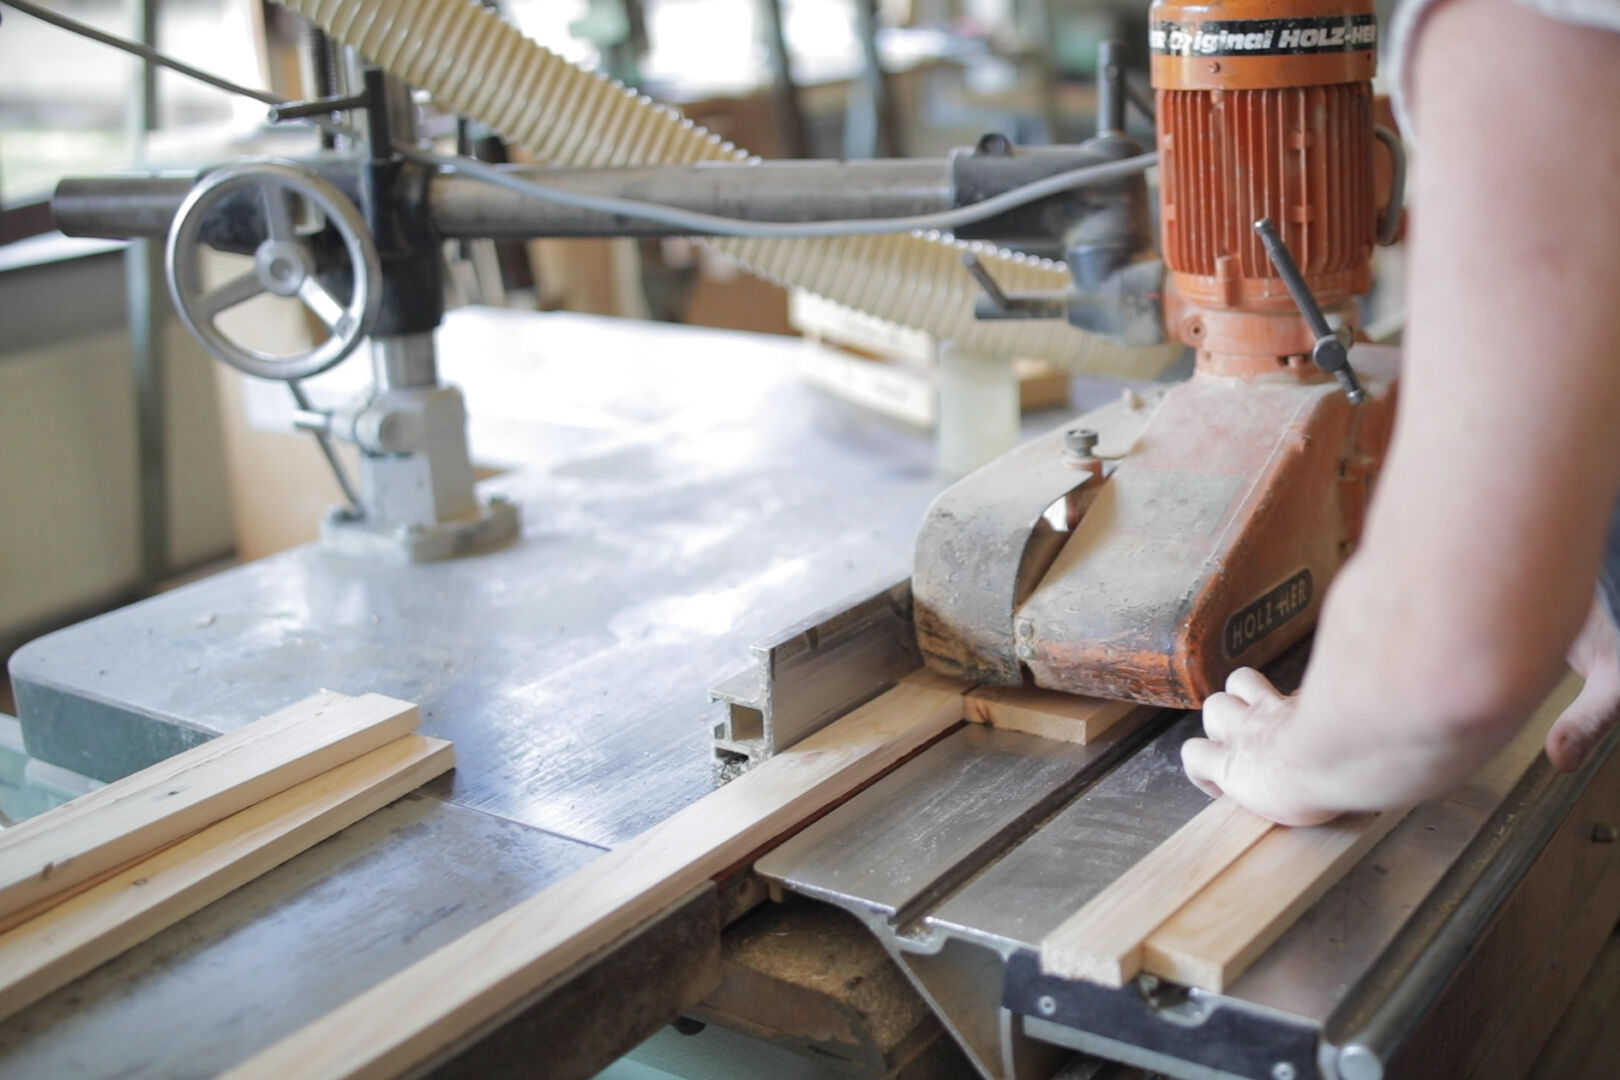 Professionelle Holzarbeiten im Kundenauftrag erledigen unsere Beschäftigten gemeinsam mit Fachpersonal.